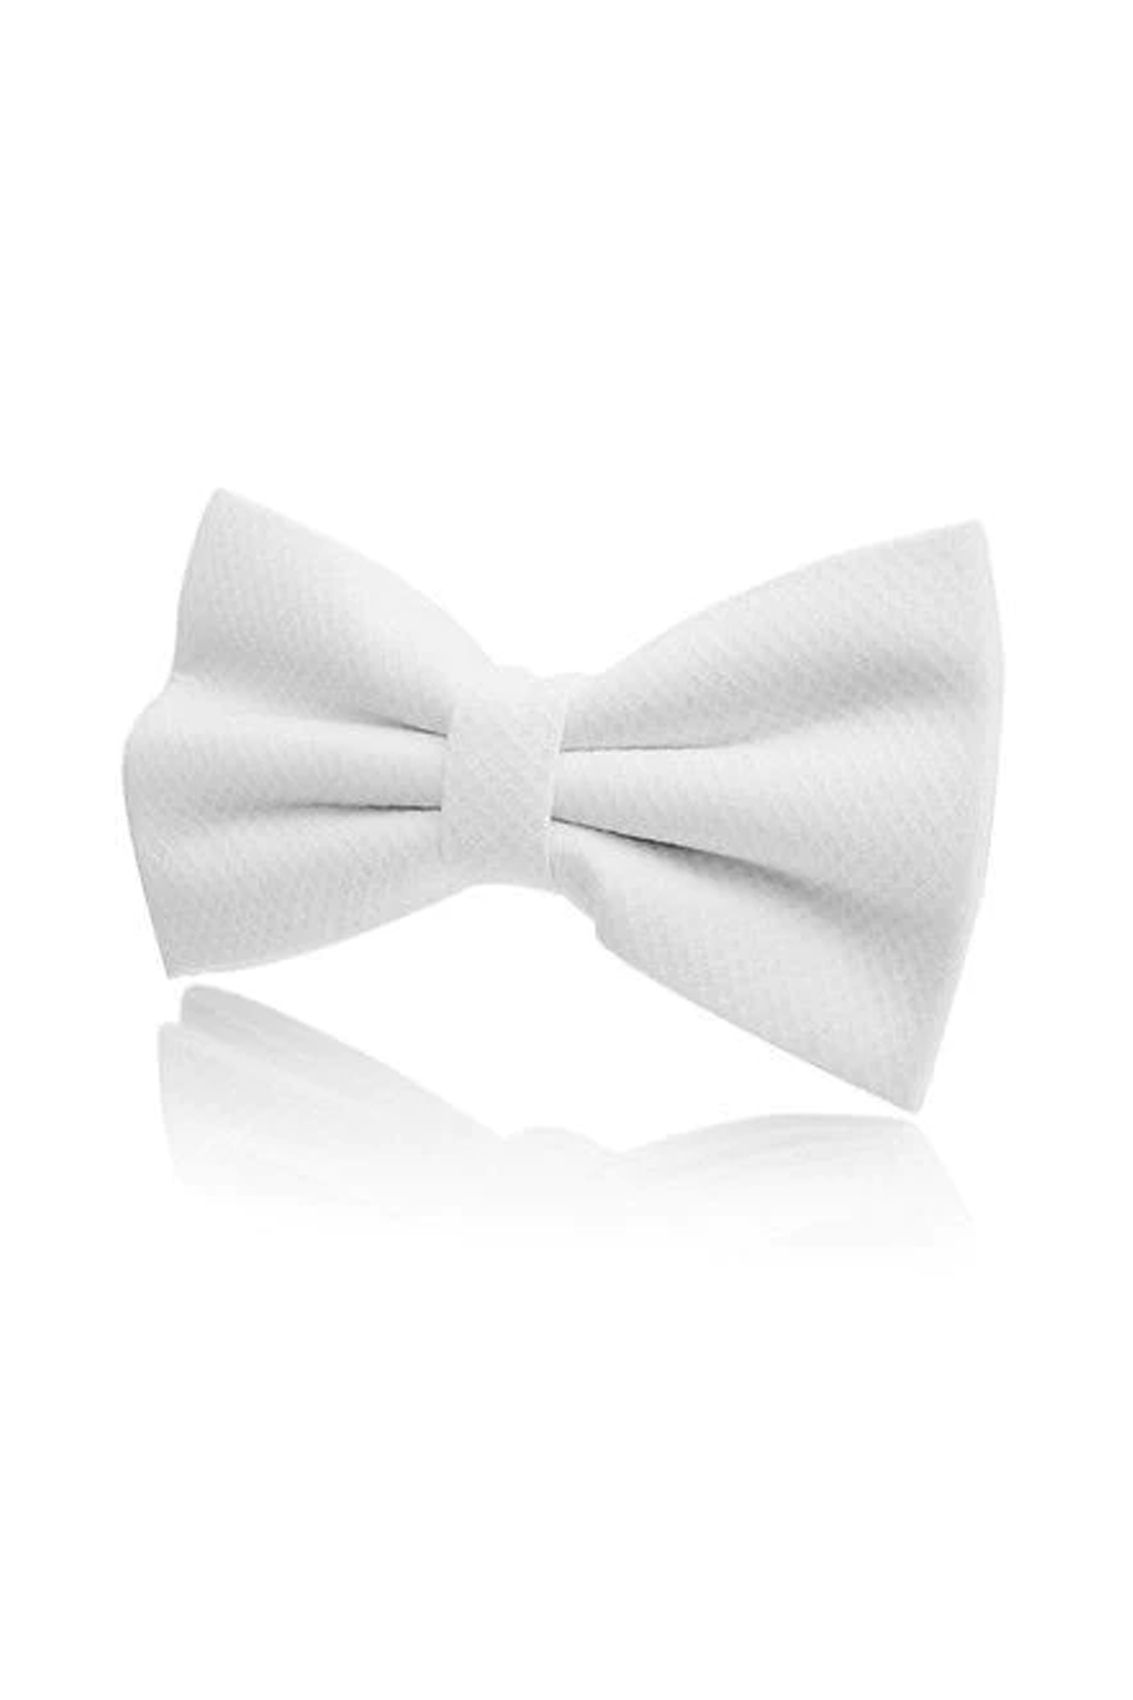 White Marcella Bow Tie - Brand New